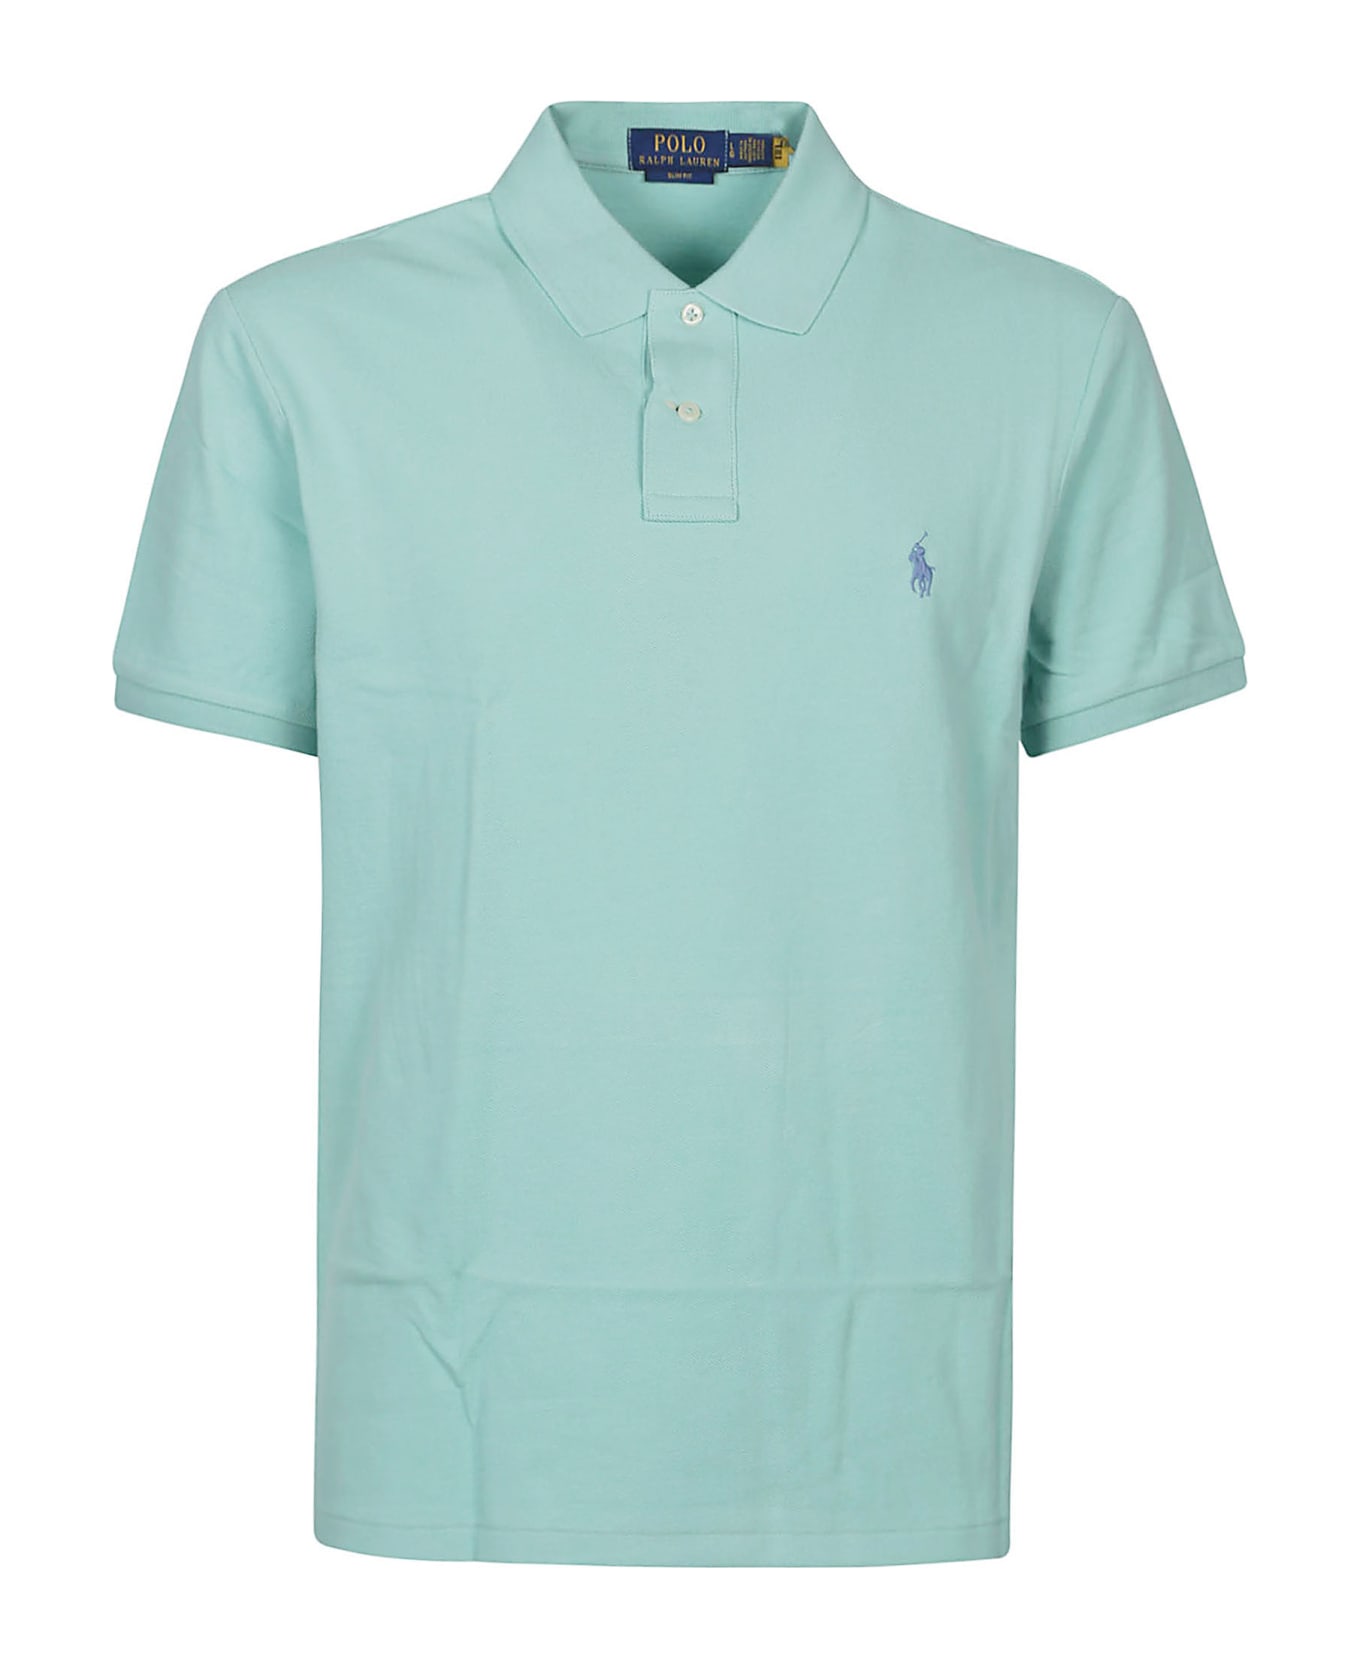 Polo Ralph Lauren Short Sleeve Polo Shirt - Celadon